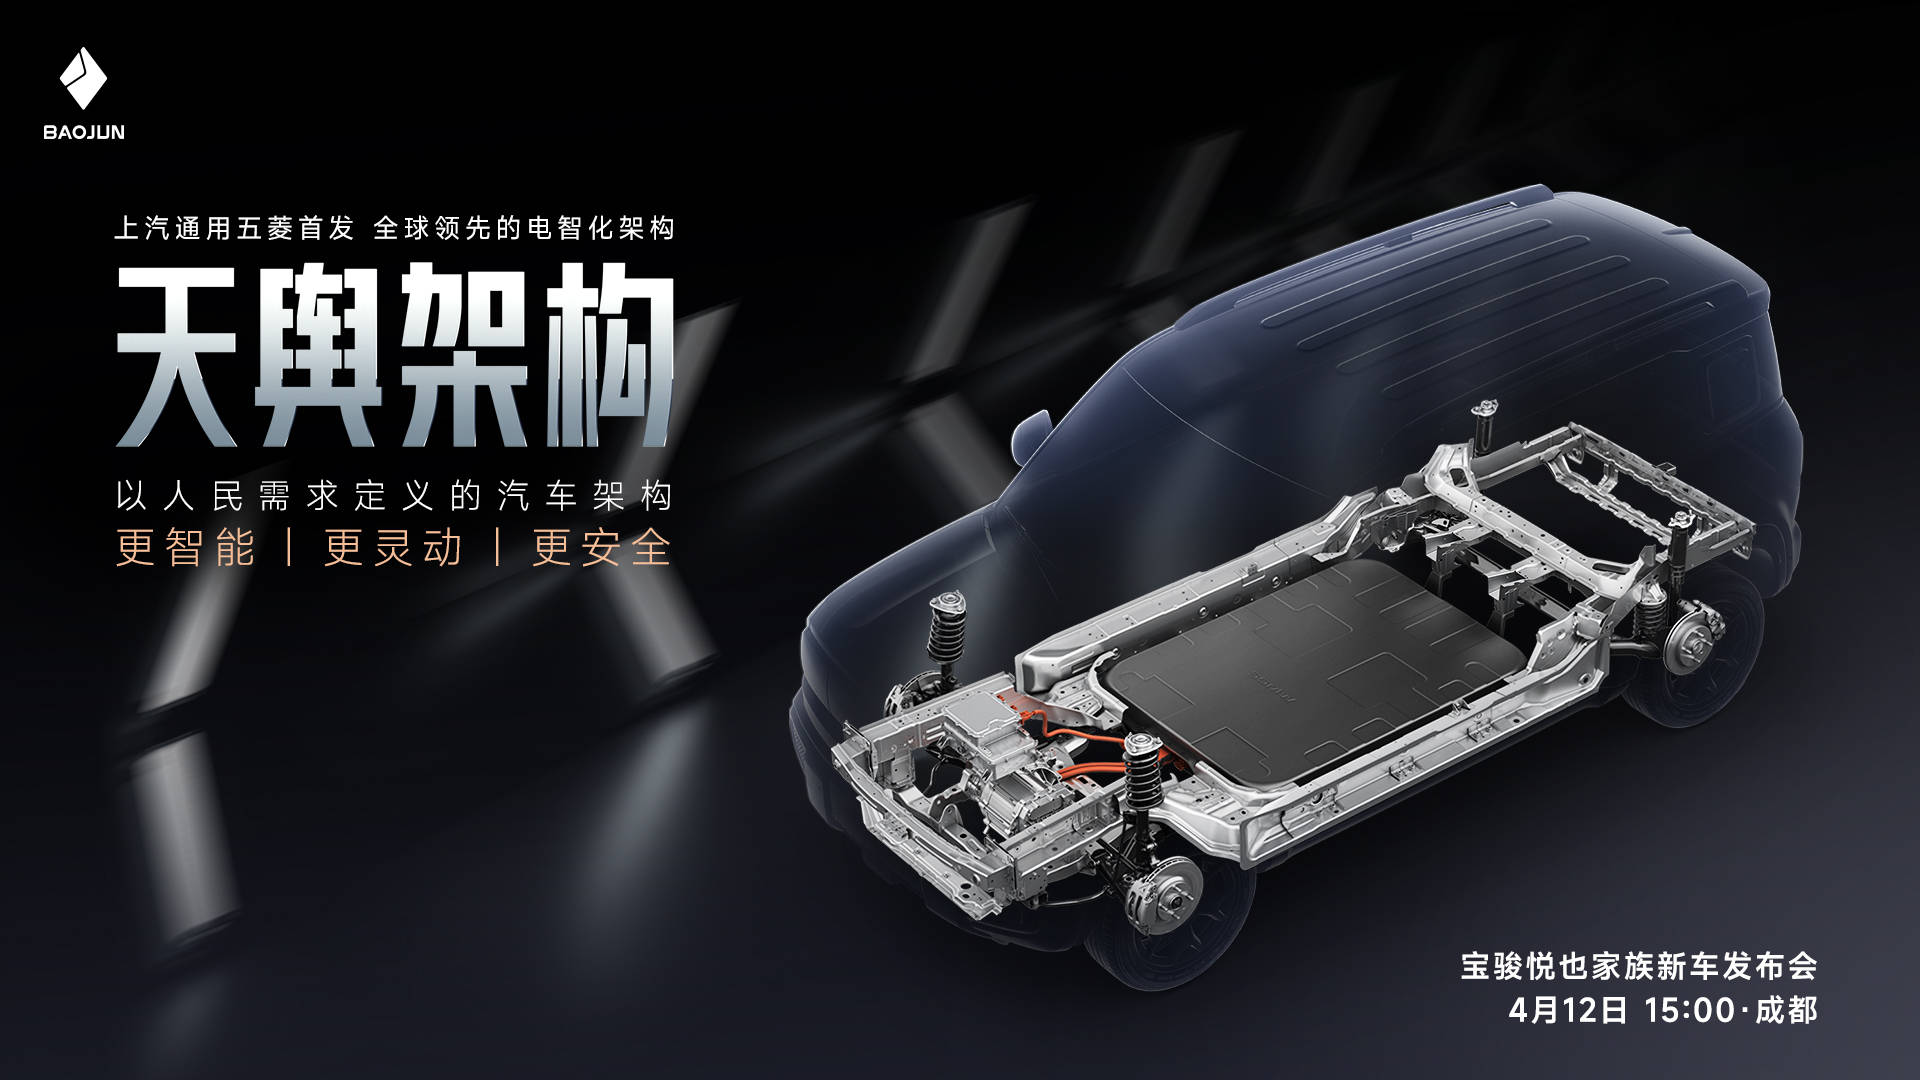 上汽通用五菱将于4月12日正式发布天域架构_搜狐汽车_ Sohu.com。